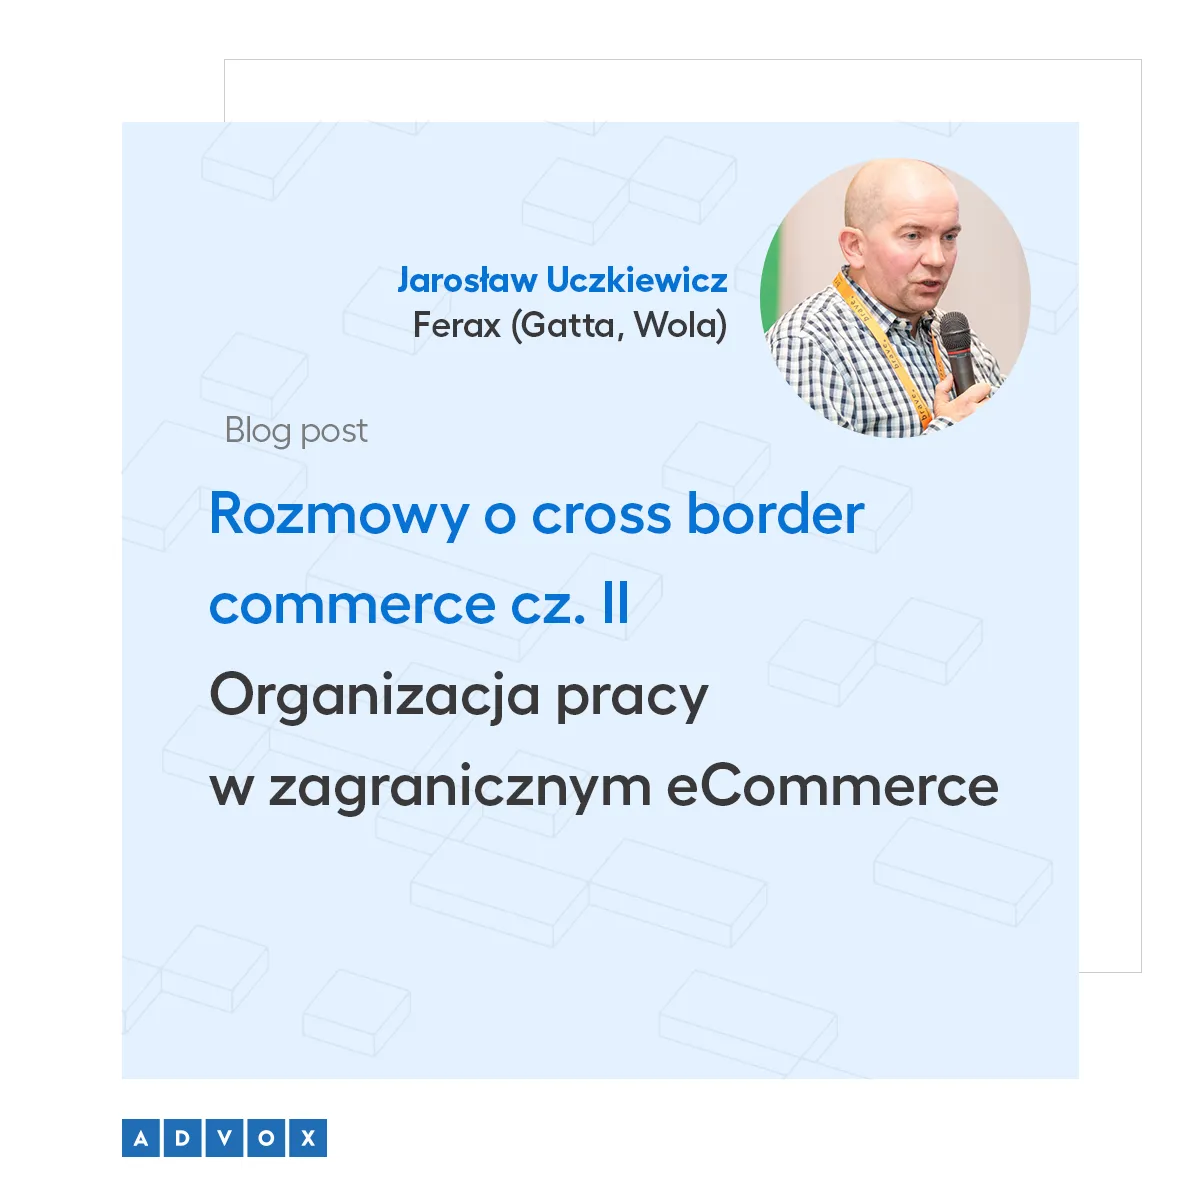 Rozmowy o cross border commerce cz. II  Organizacja pracy w  zagranicznym eCommerce - wywiad z Jarosławem Uczkiewiczem